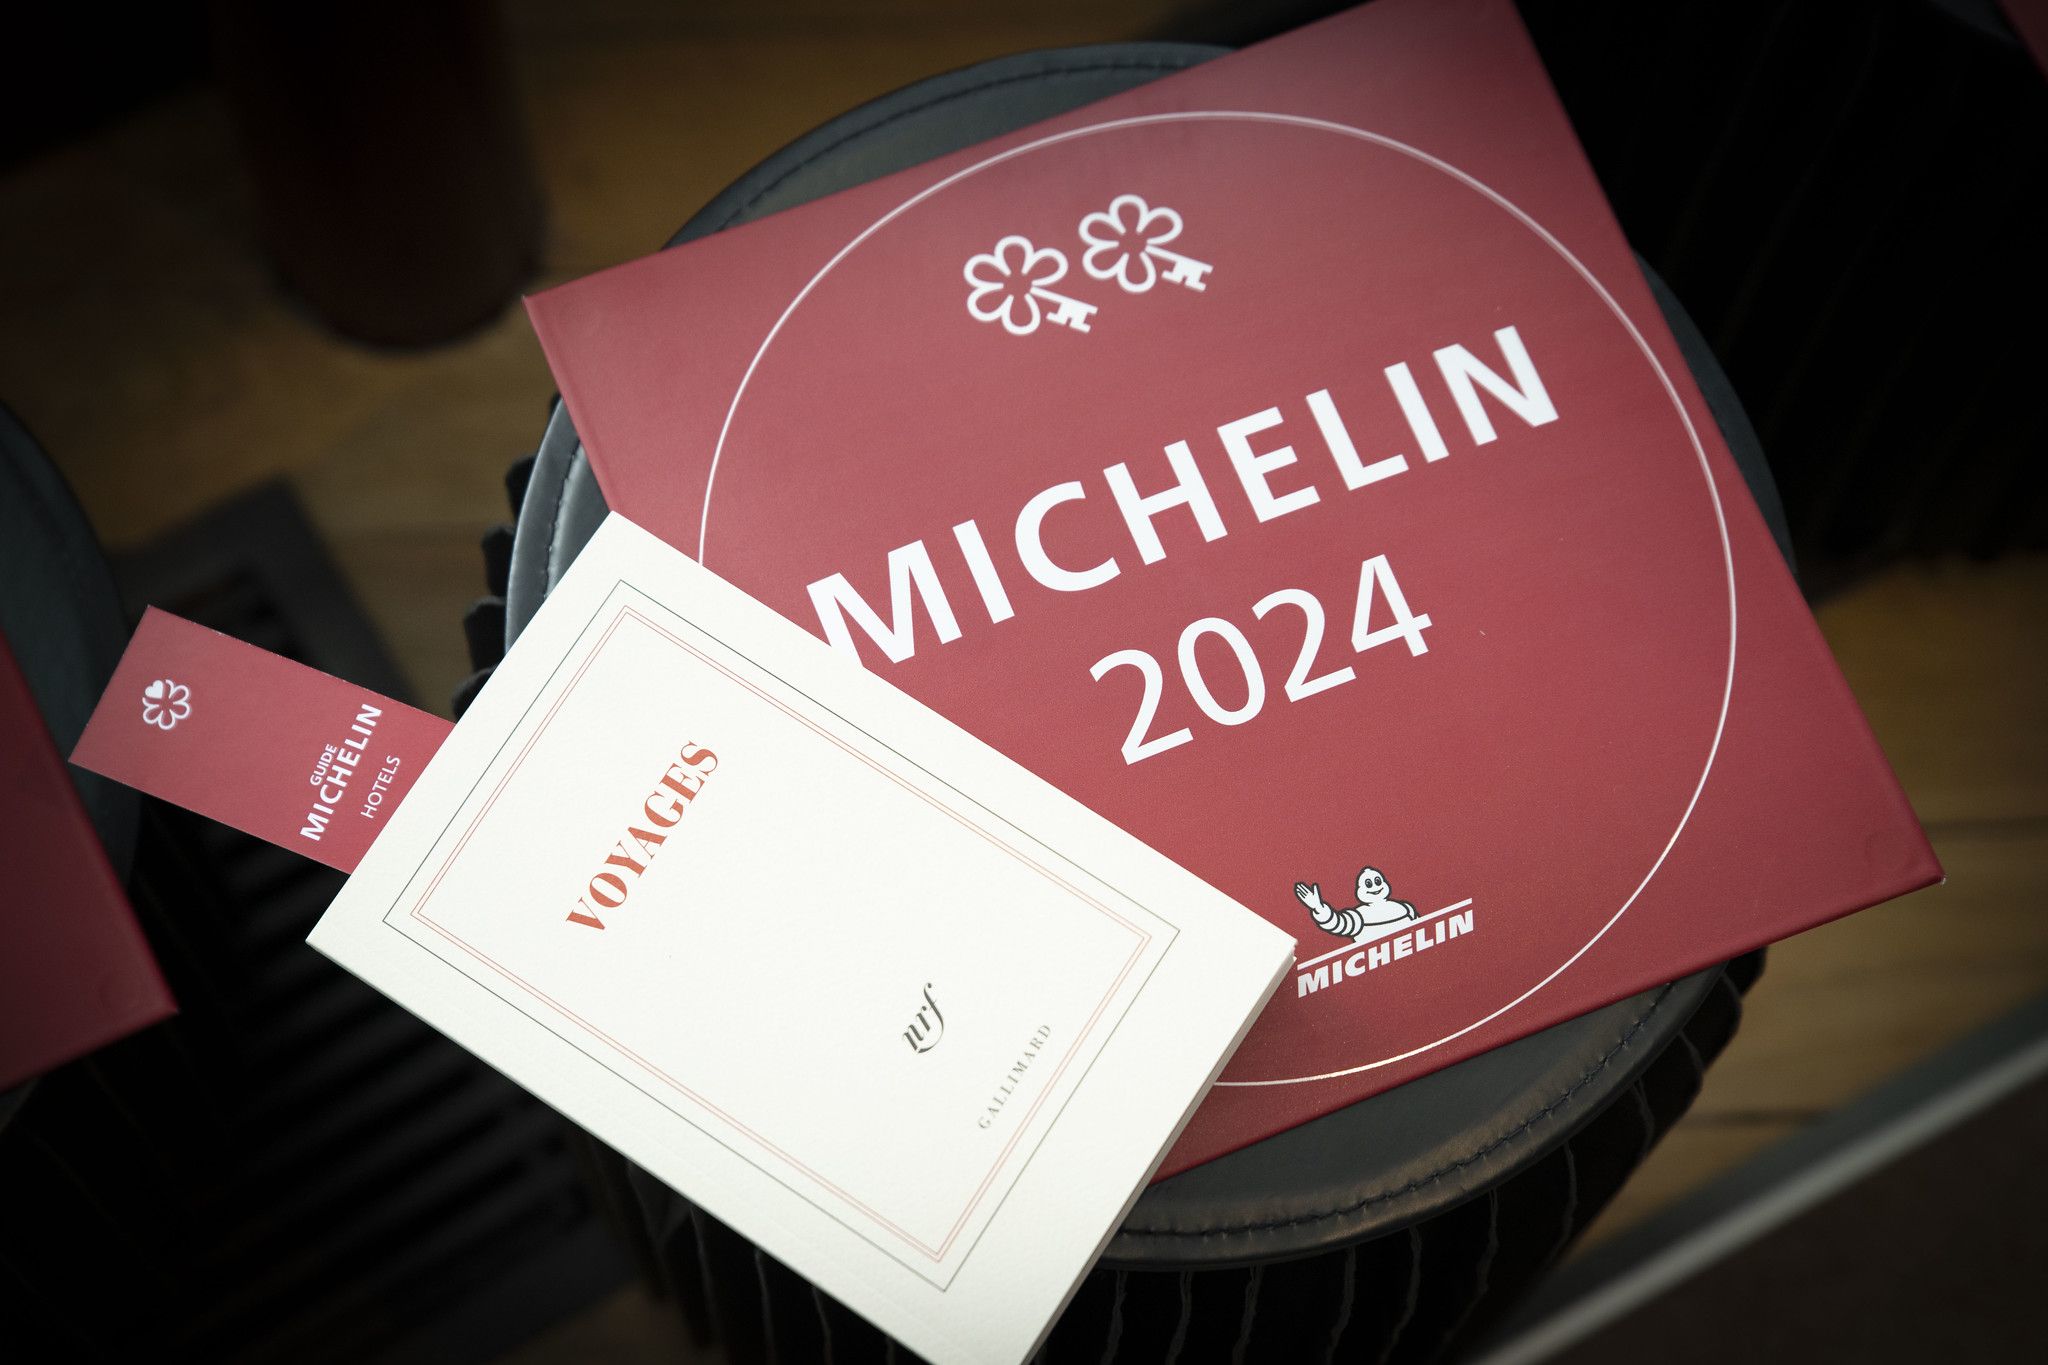 França inaugura les claus Michelin, el guardó per reconèixer els millors hotels